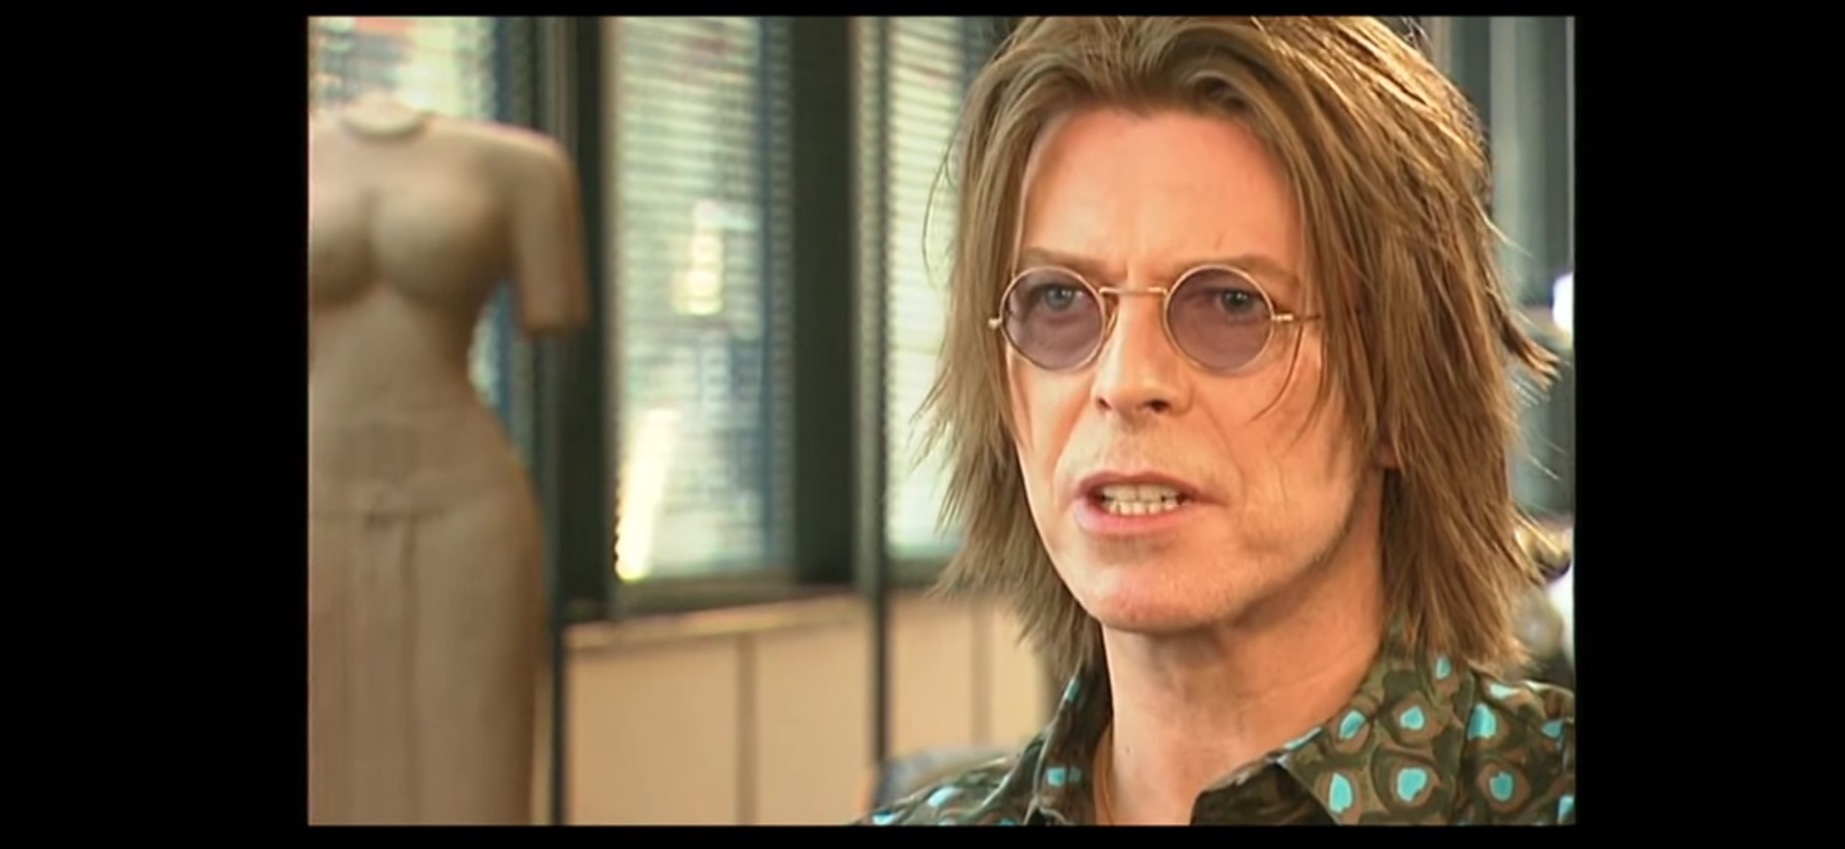 David Bowie im Interview mit der BBC.